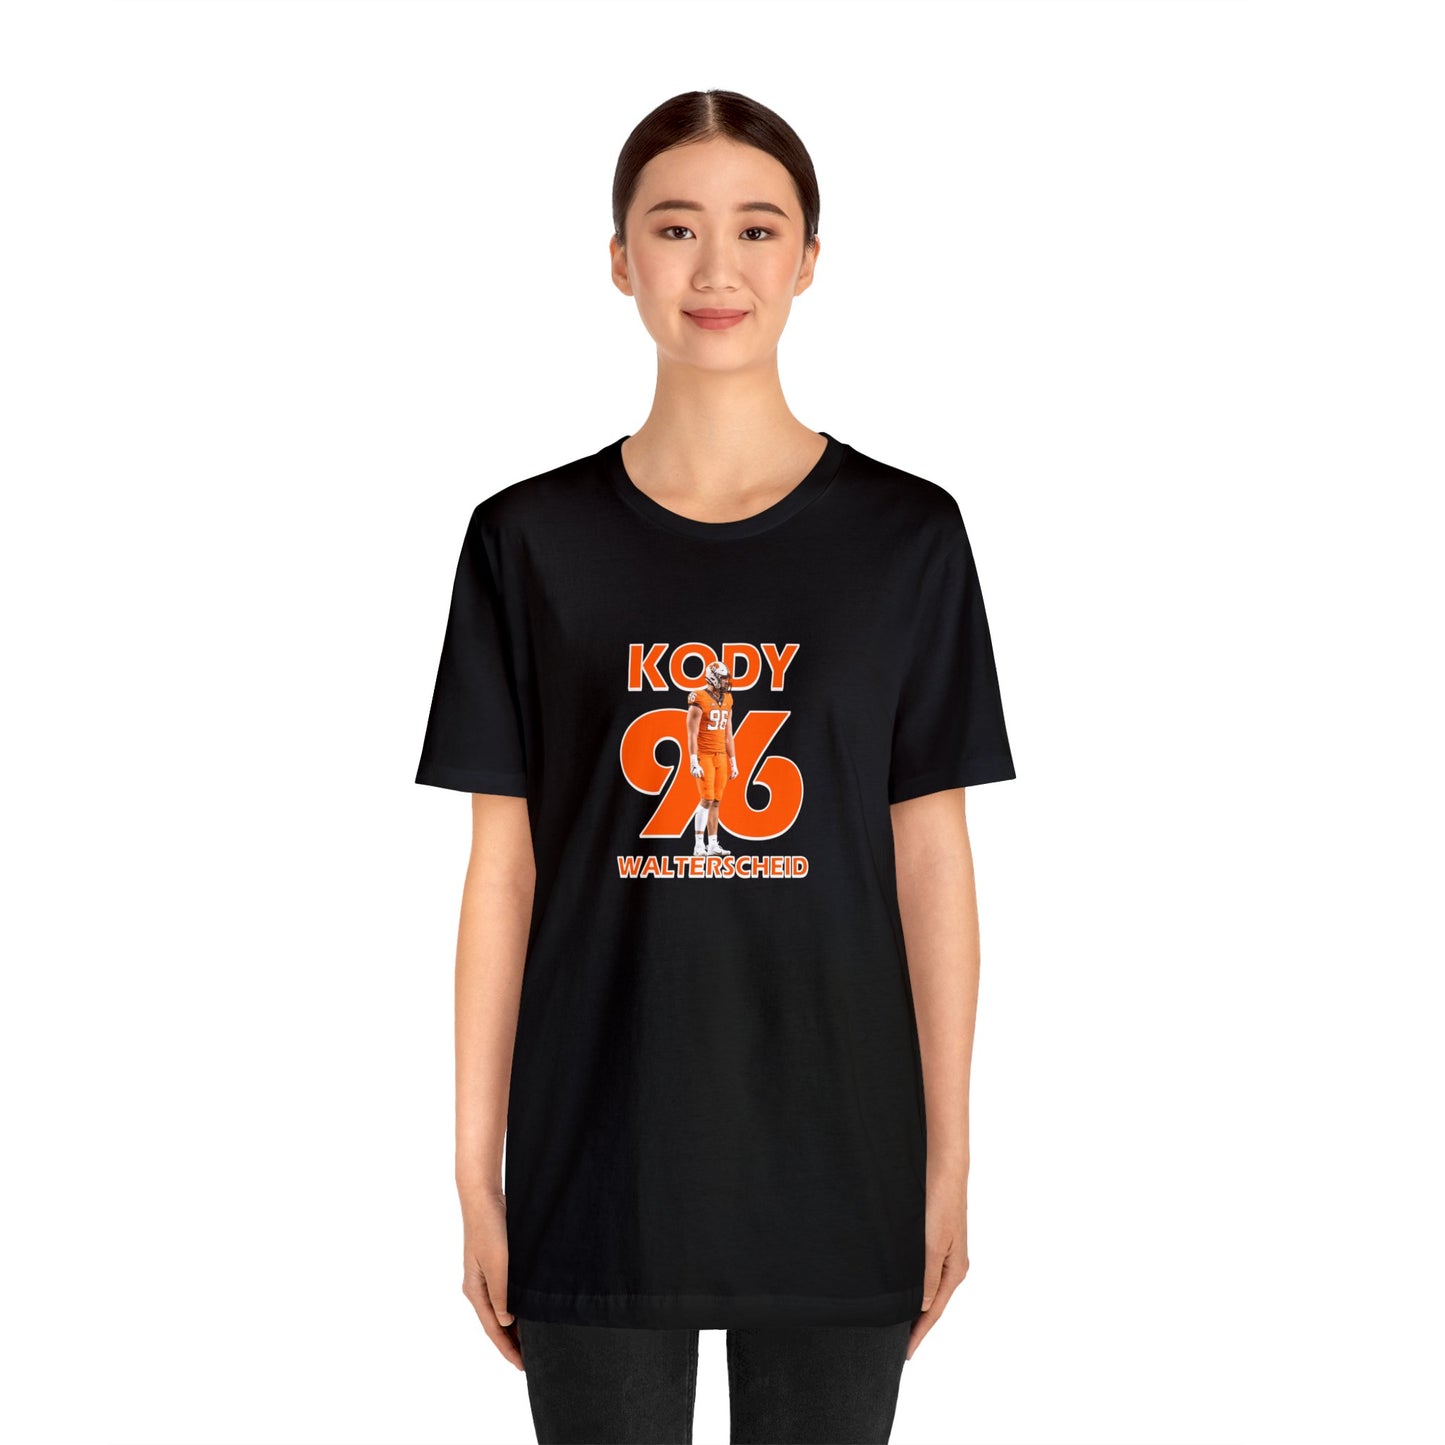 Kody Walterscheid T-Shirt